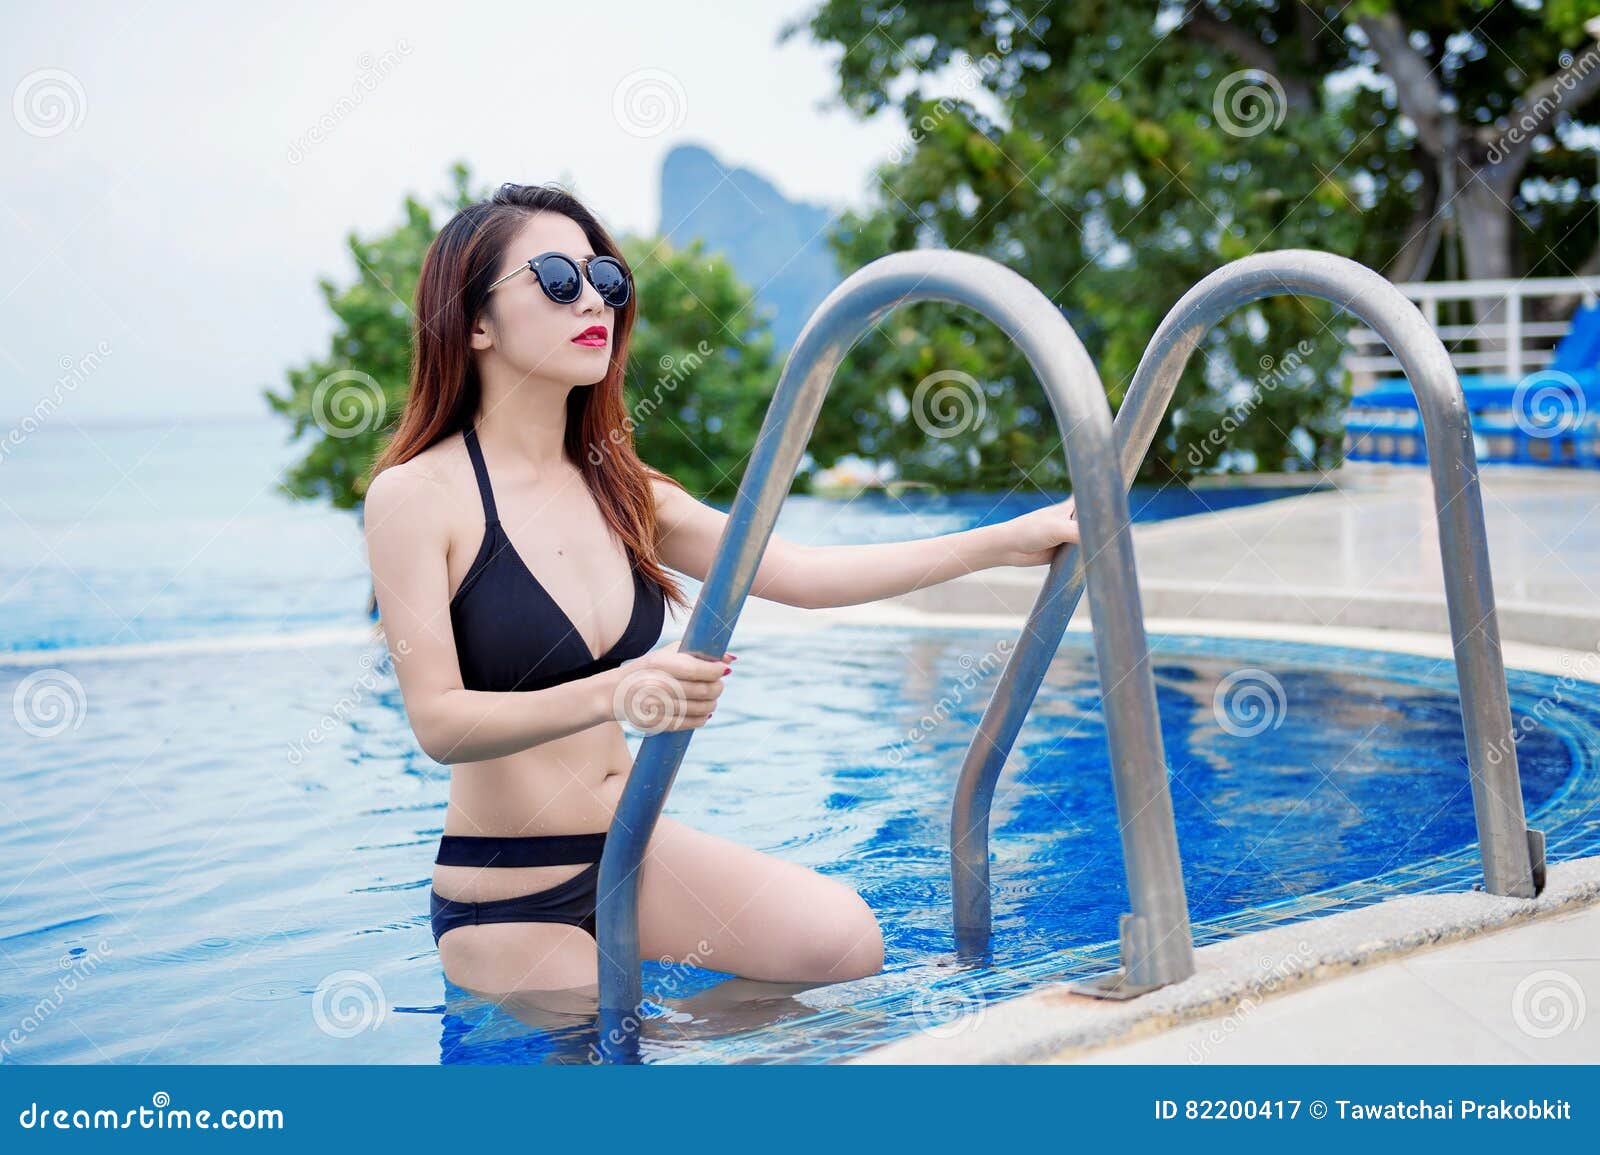 girl in bikini by indoor pool porn photo